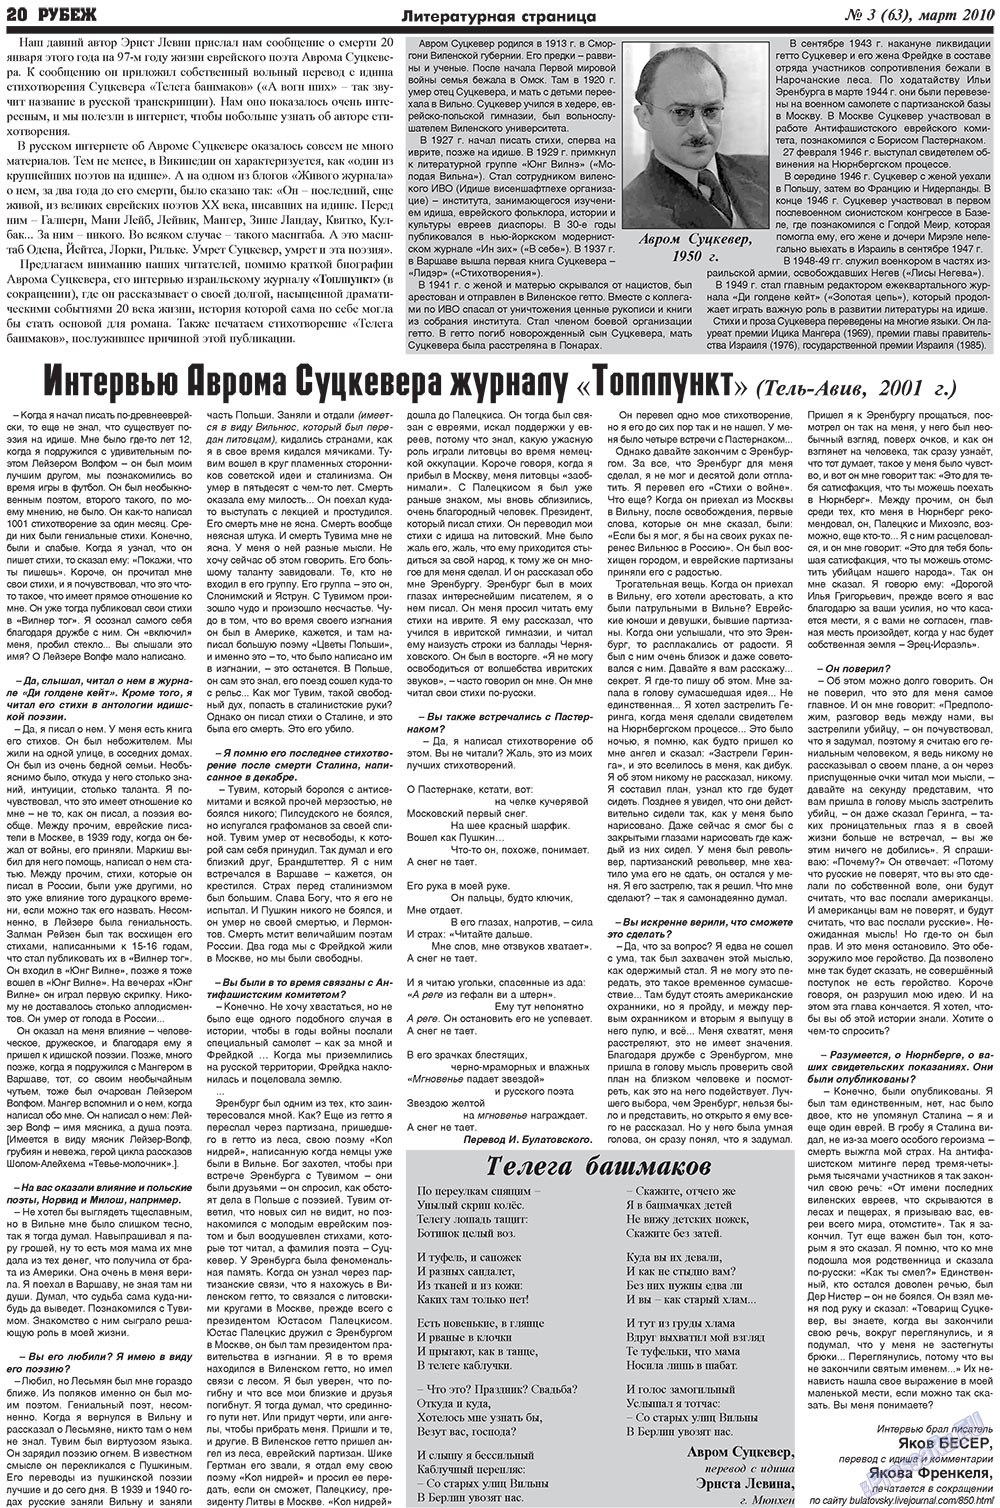 Рубеж (газета). 2010 год, номер 3, стр. 20